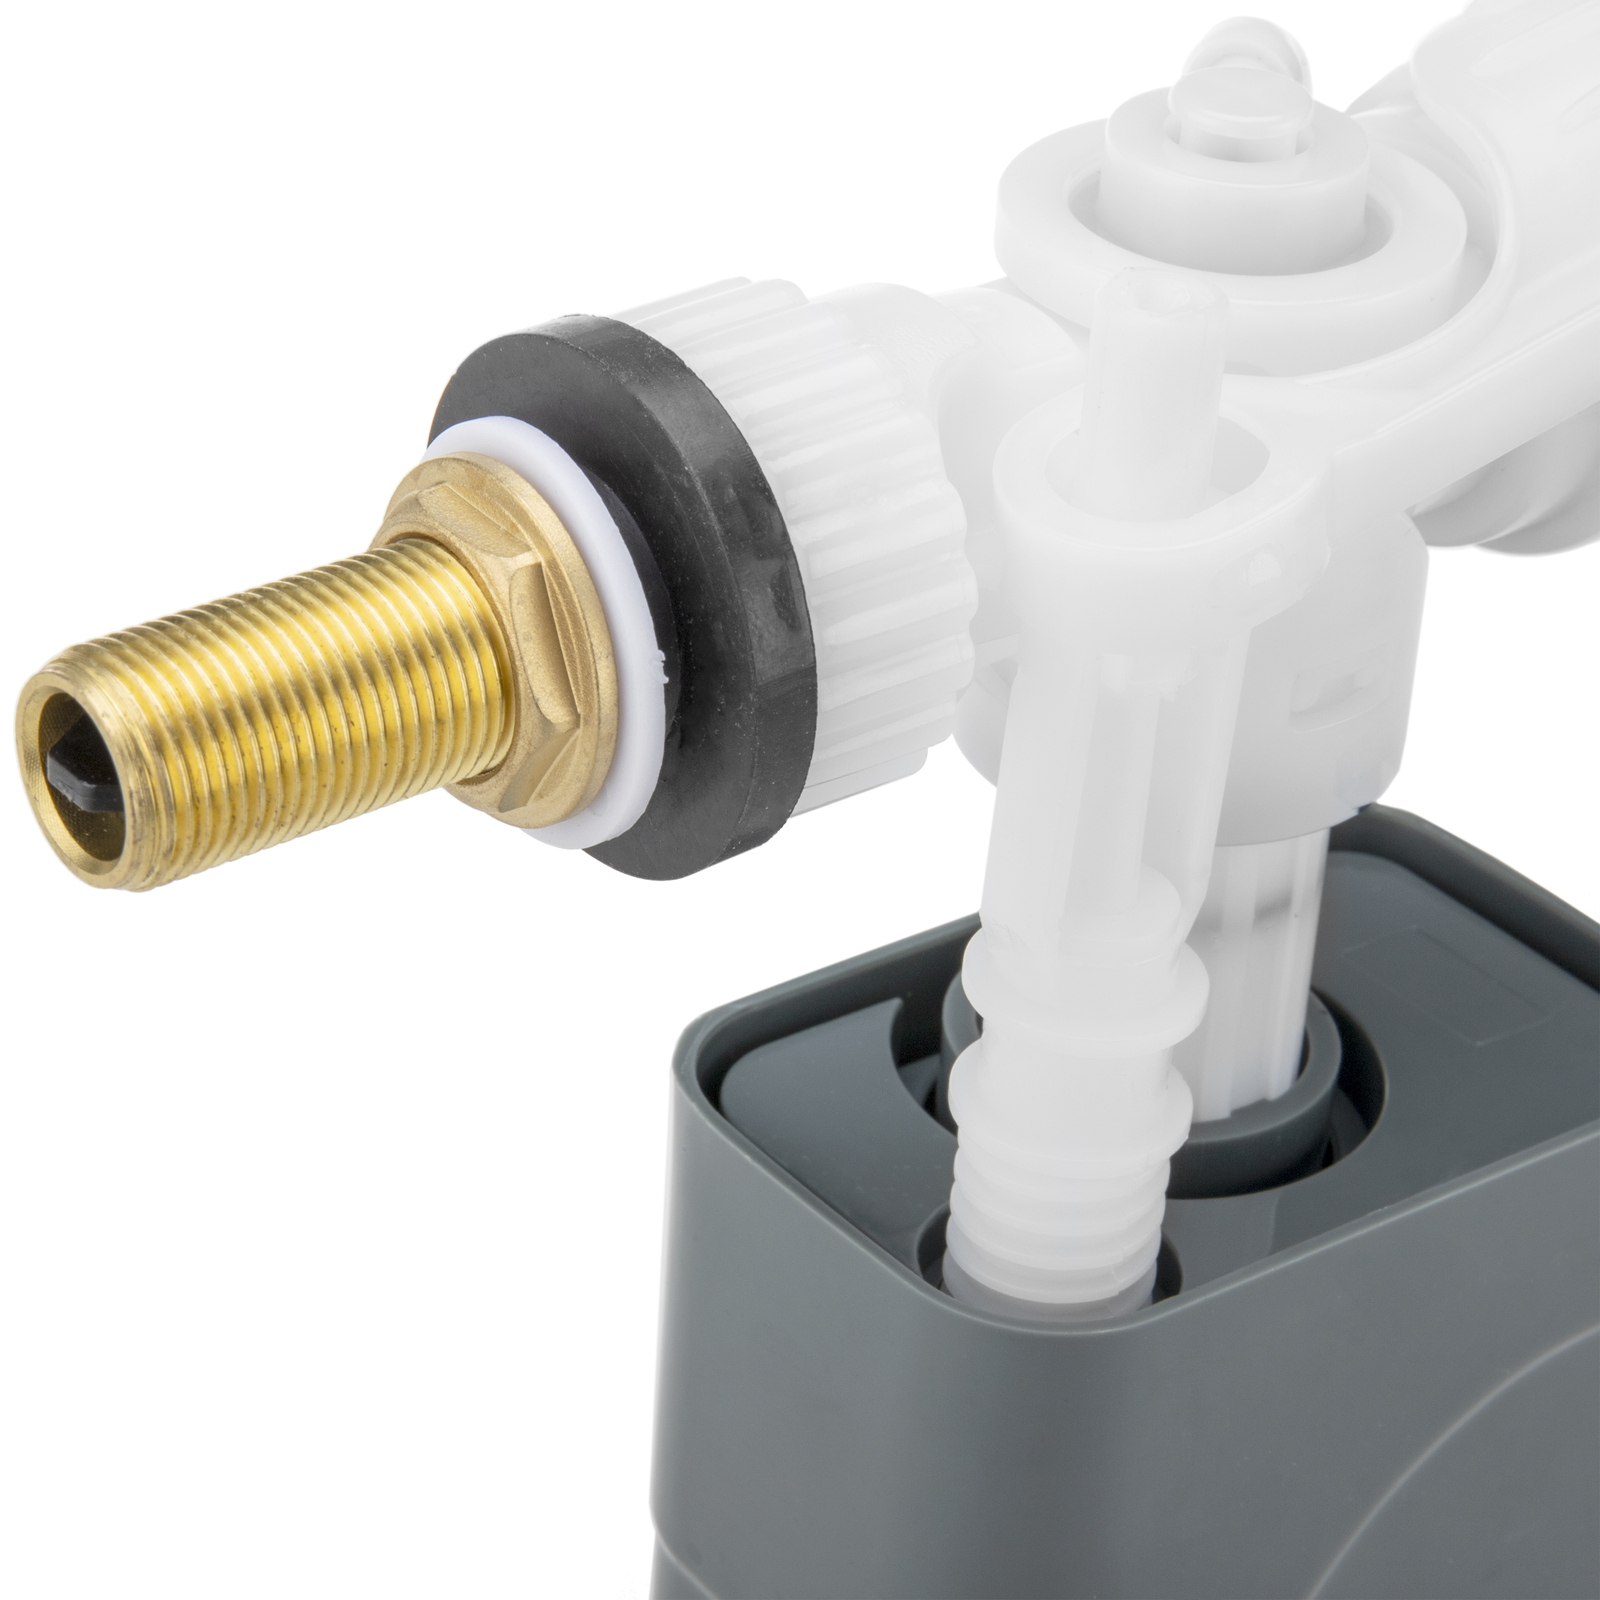 Válvula de flotador para cisterna universal con entrada vertical o lateral  3/8 - Cablematic